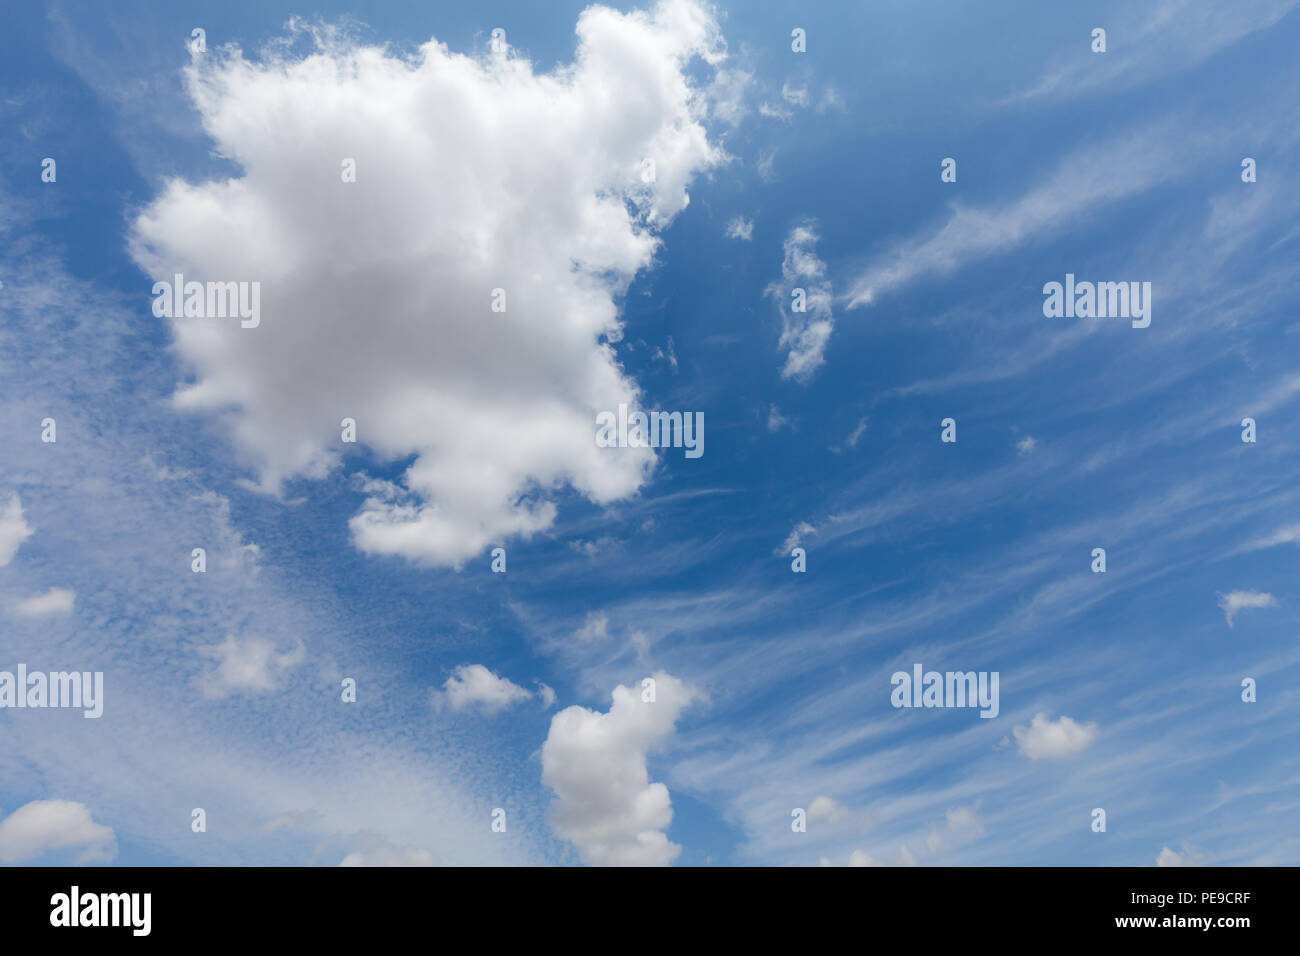 Schöne weiße Wolken und blauer Himmel über England UK. Flauschig und wispy cloudscape Hintergrund Stockfoto